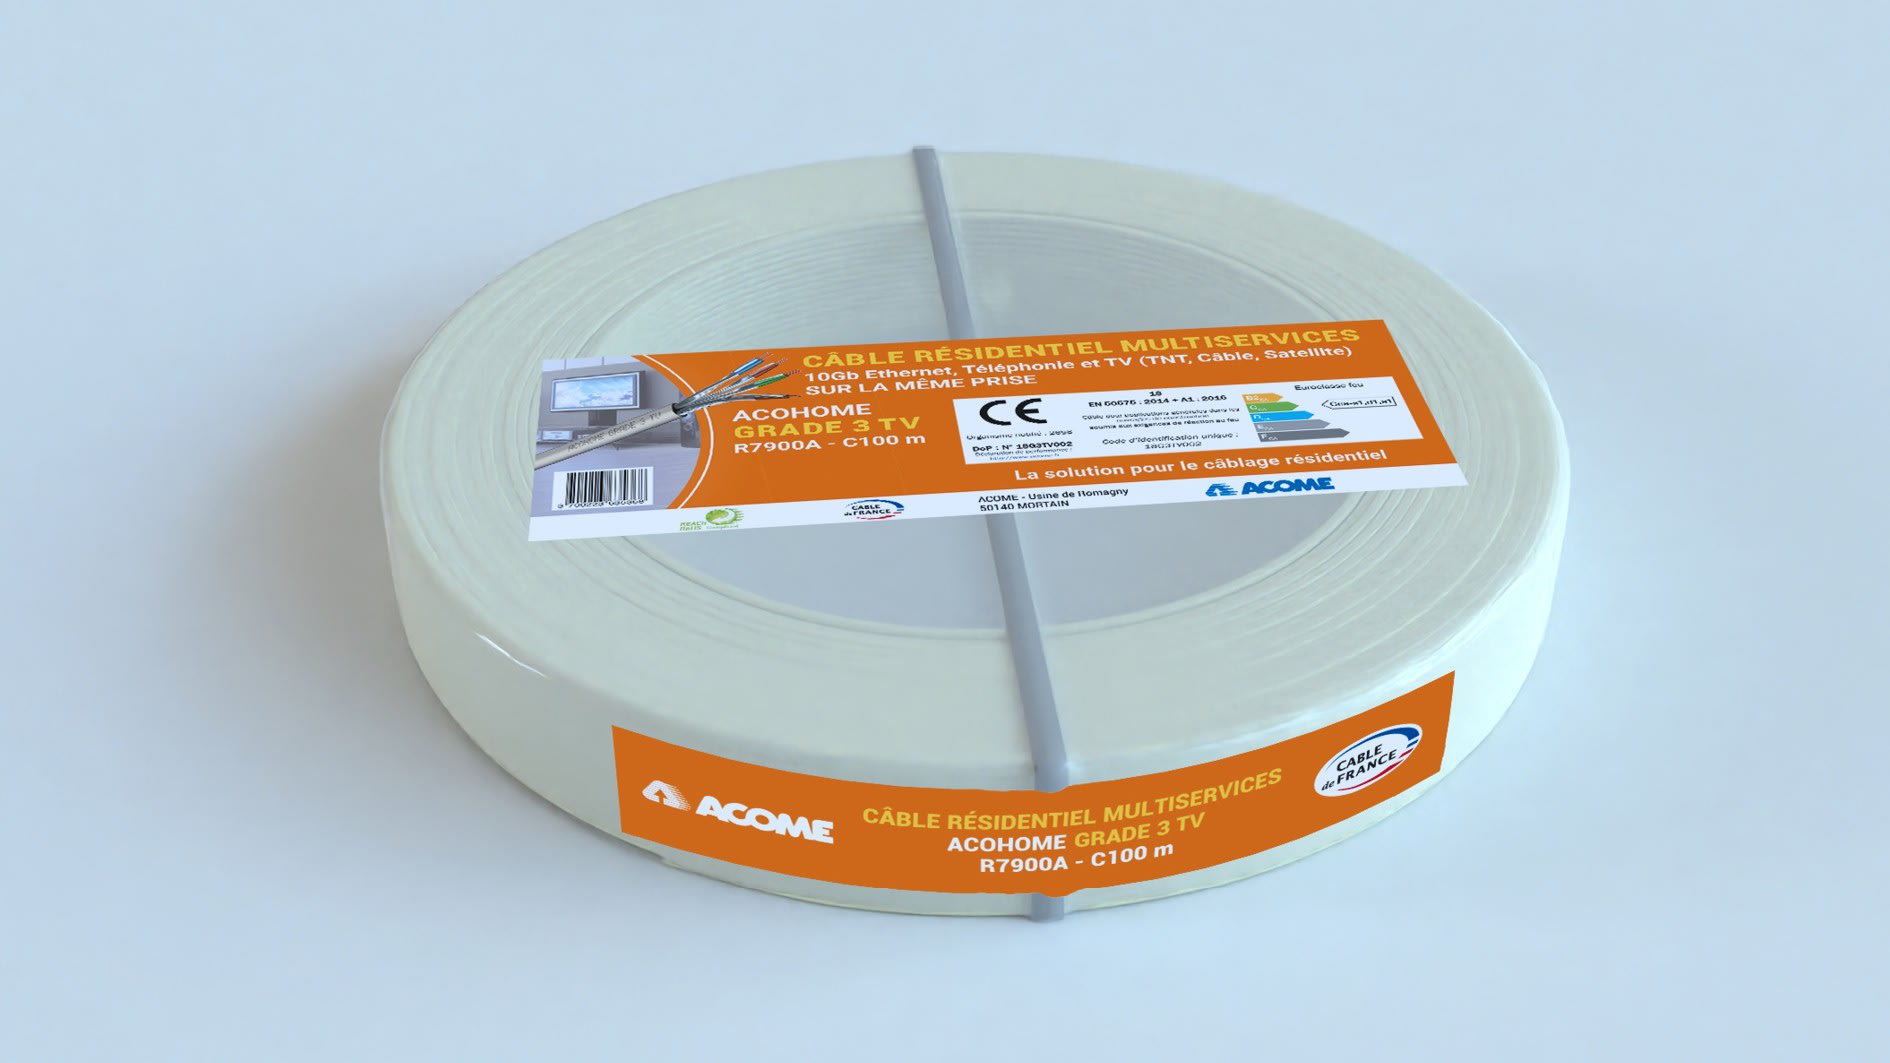 Acome - cable Grade 3TV LSOH-FR 4P couronne 100m ivoire Cca